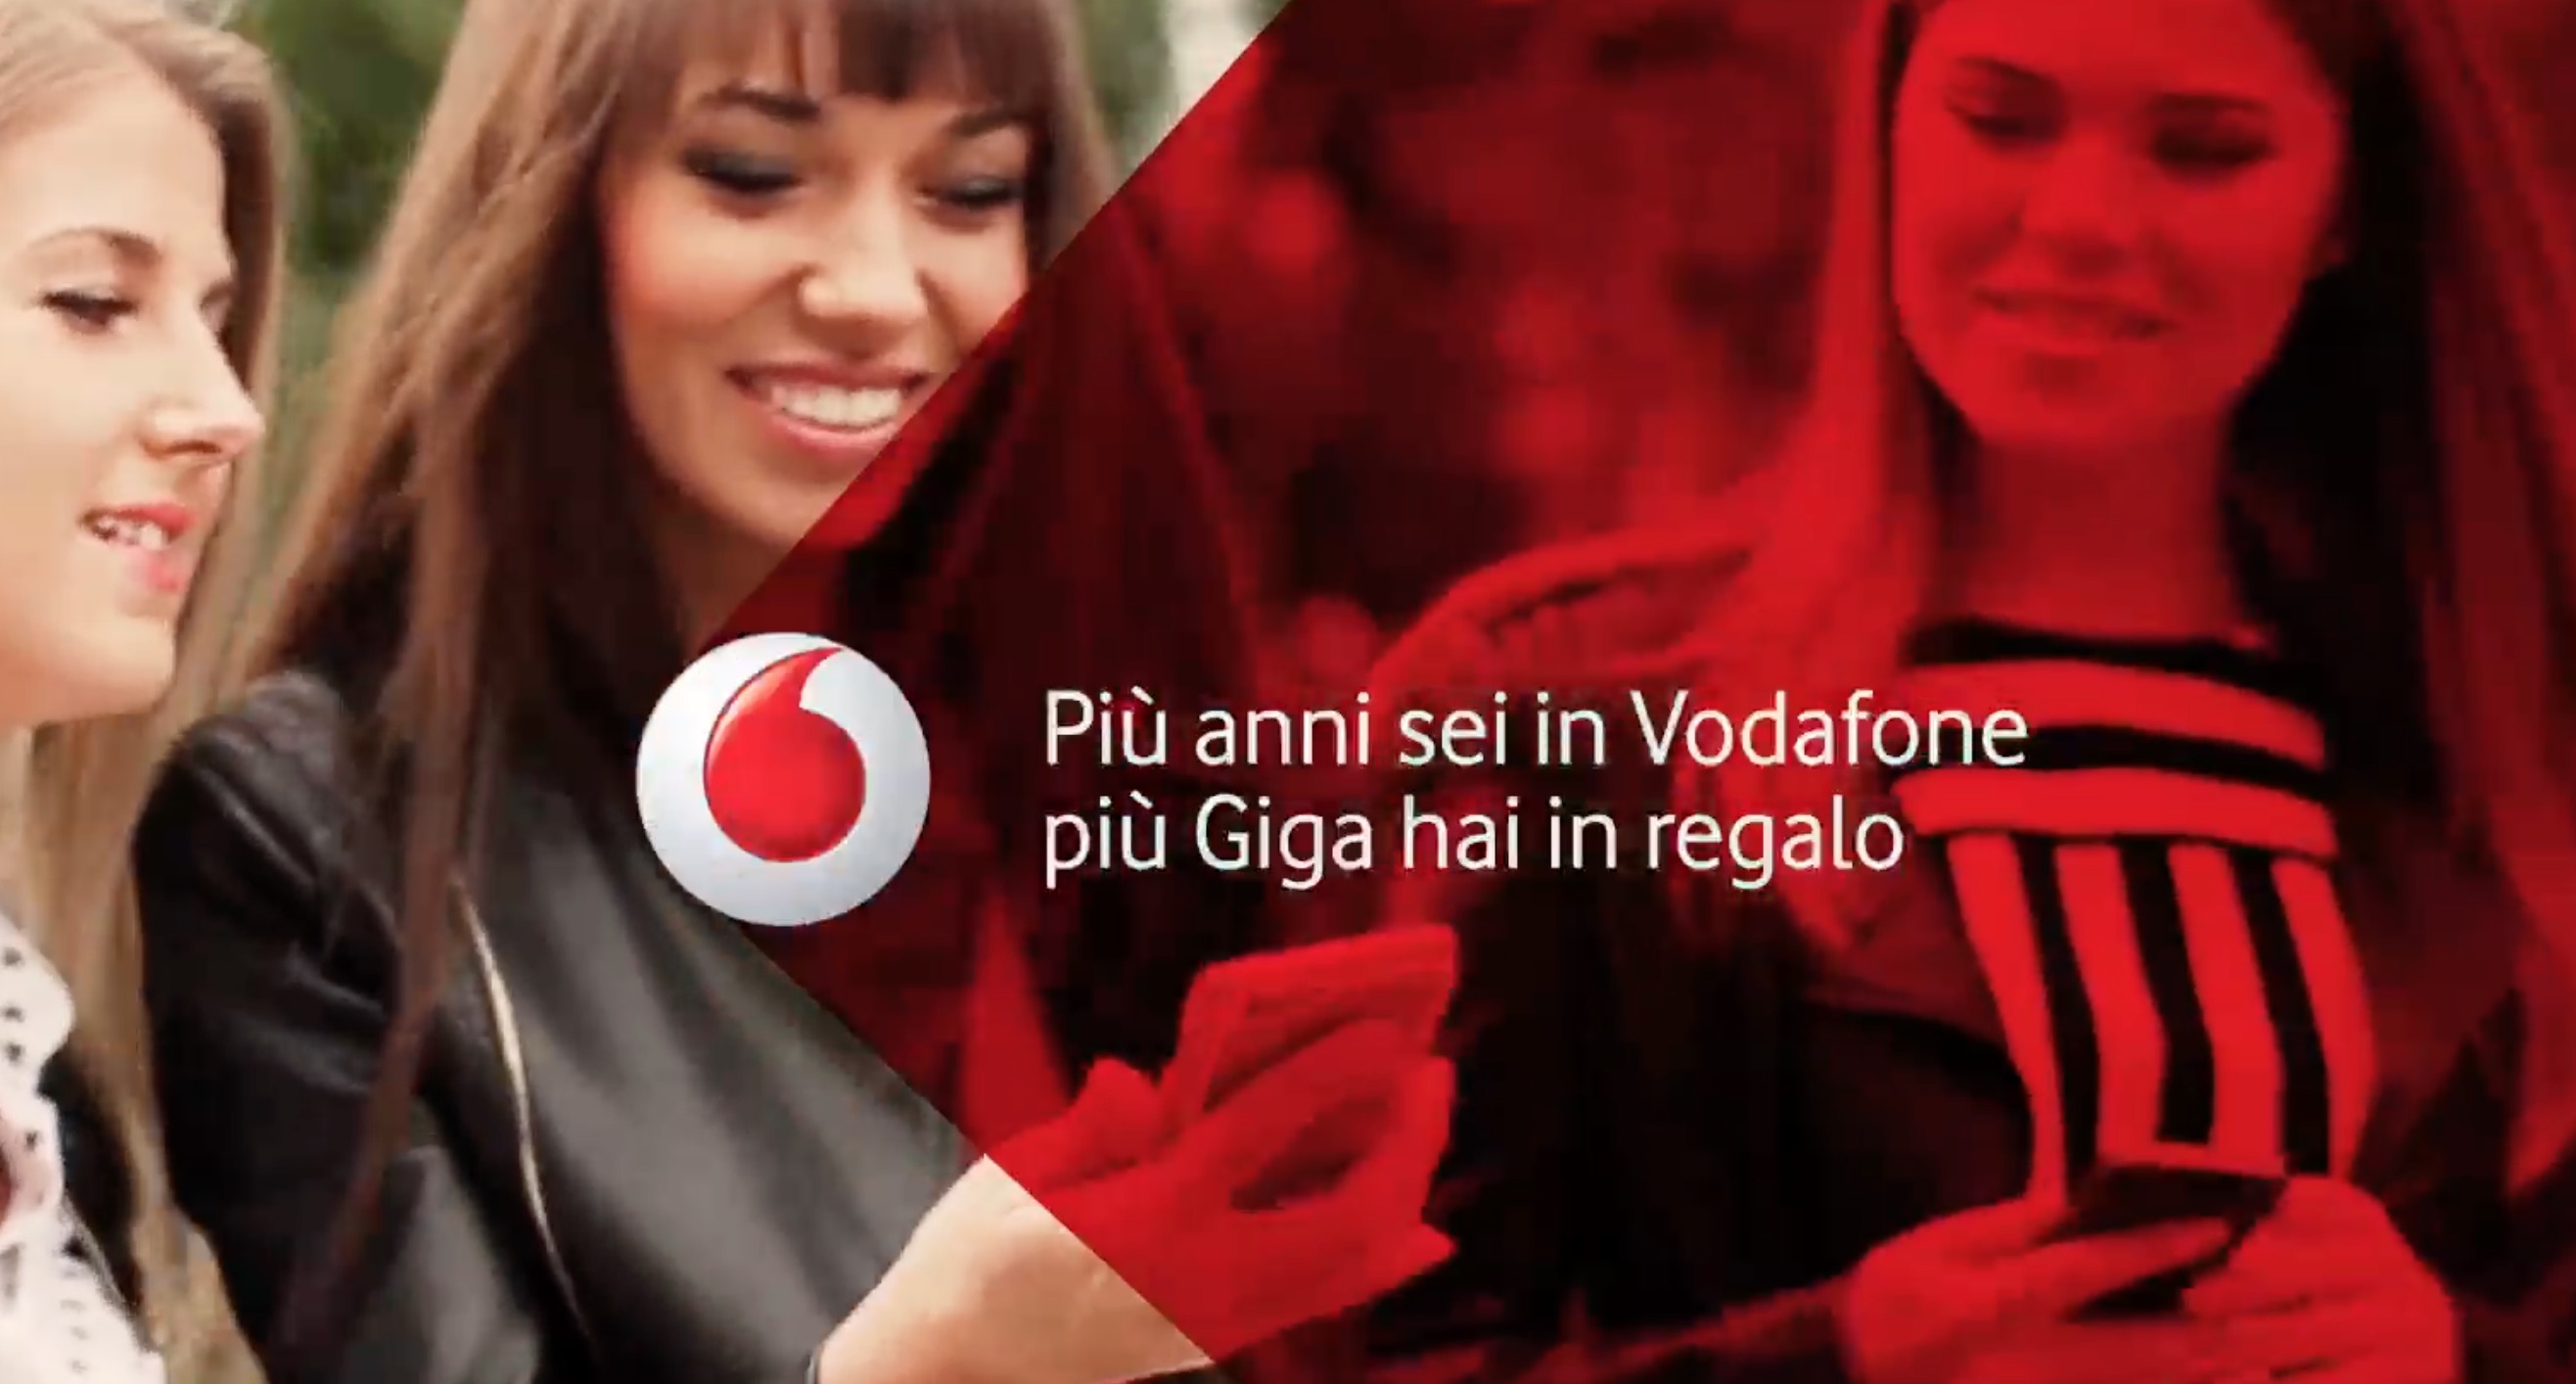 Vodafone promozione clienti fedeli 10 GB